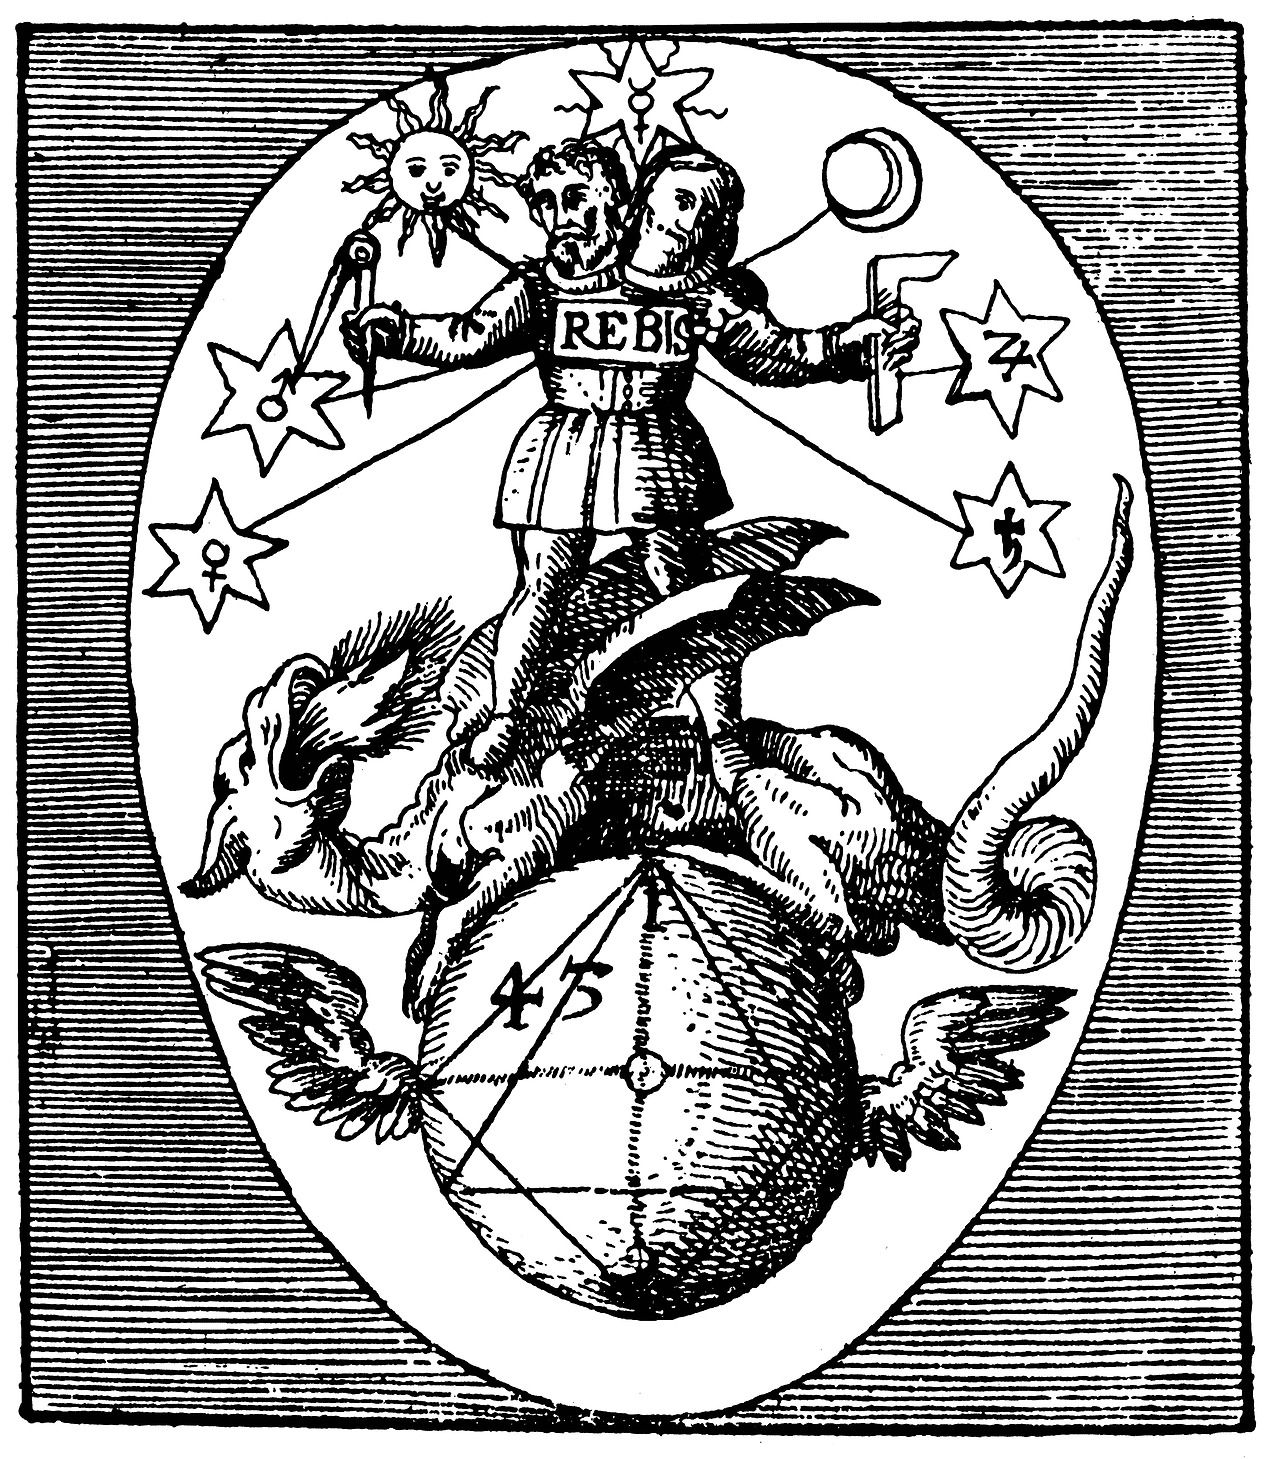 heinrich-nollius-rebis-theoria-philosophiae-hermeticae-1617.jpg